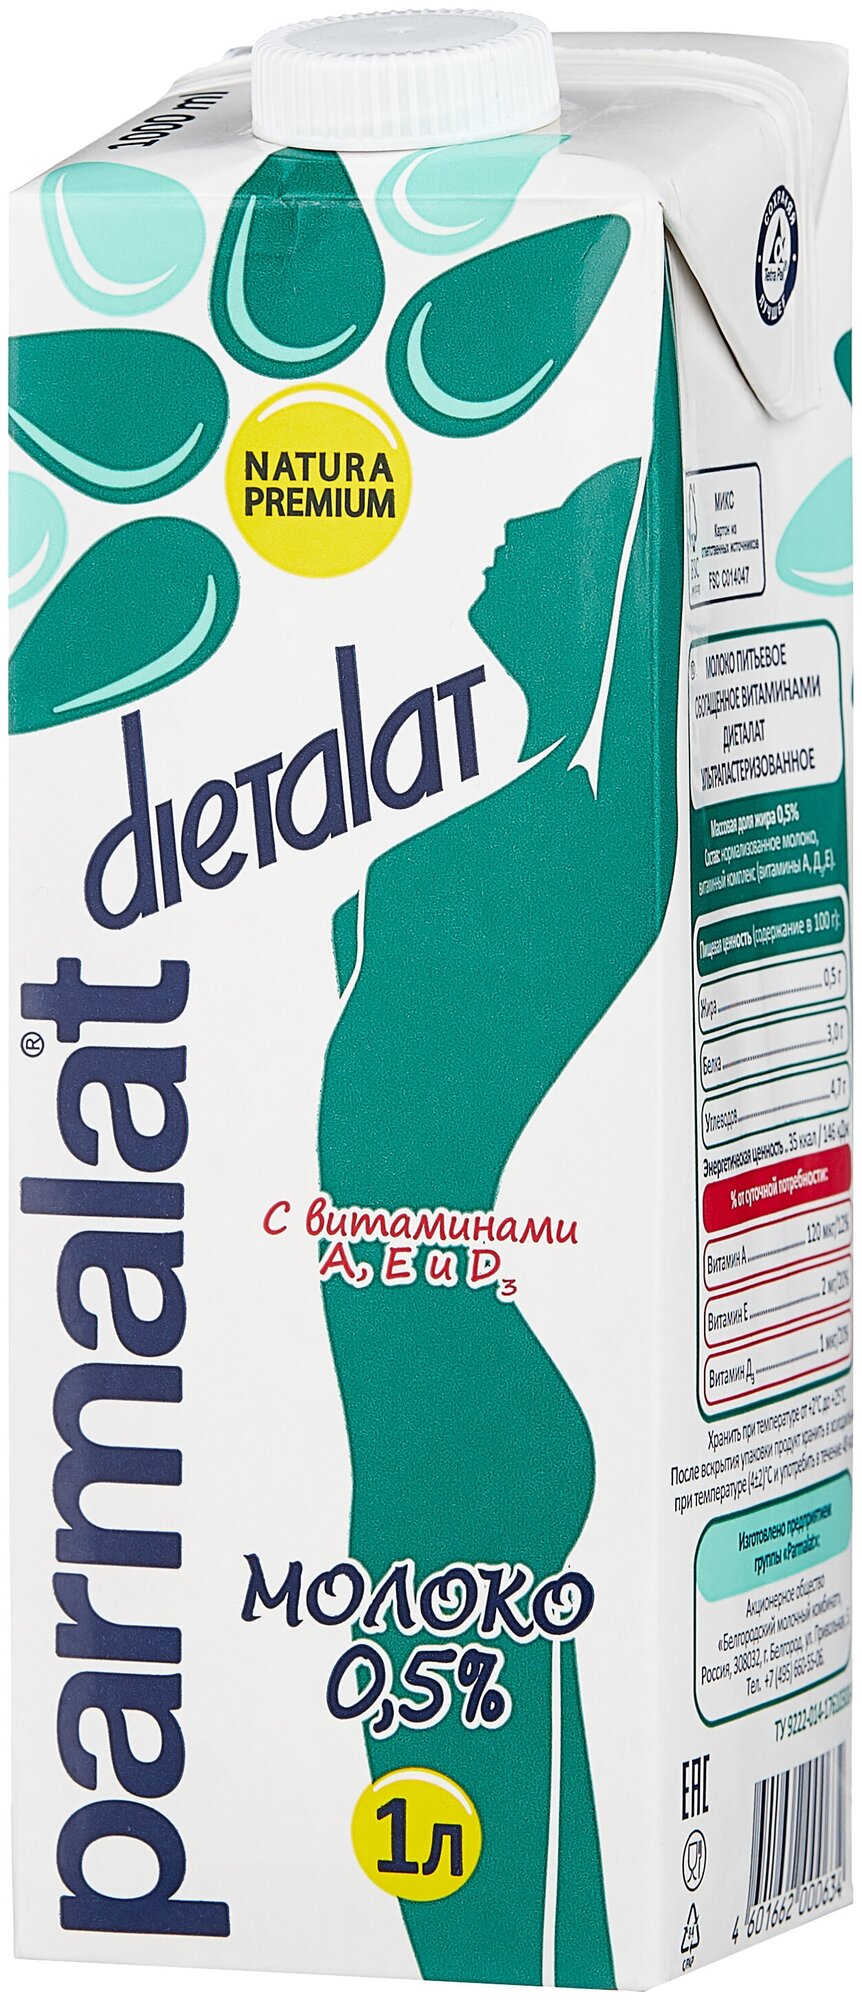 Молоко Parmalat Dietalat ультрапастеризованное витаминизированное 0.5%, 1 л, 1.065 кг